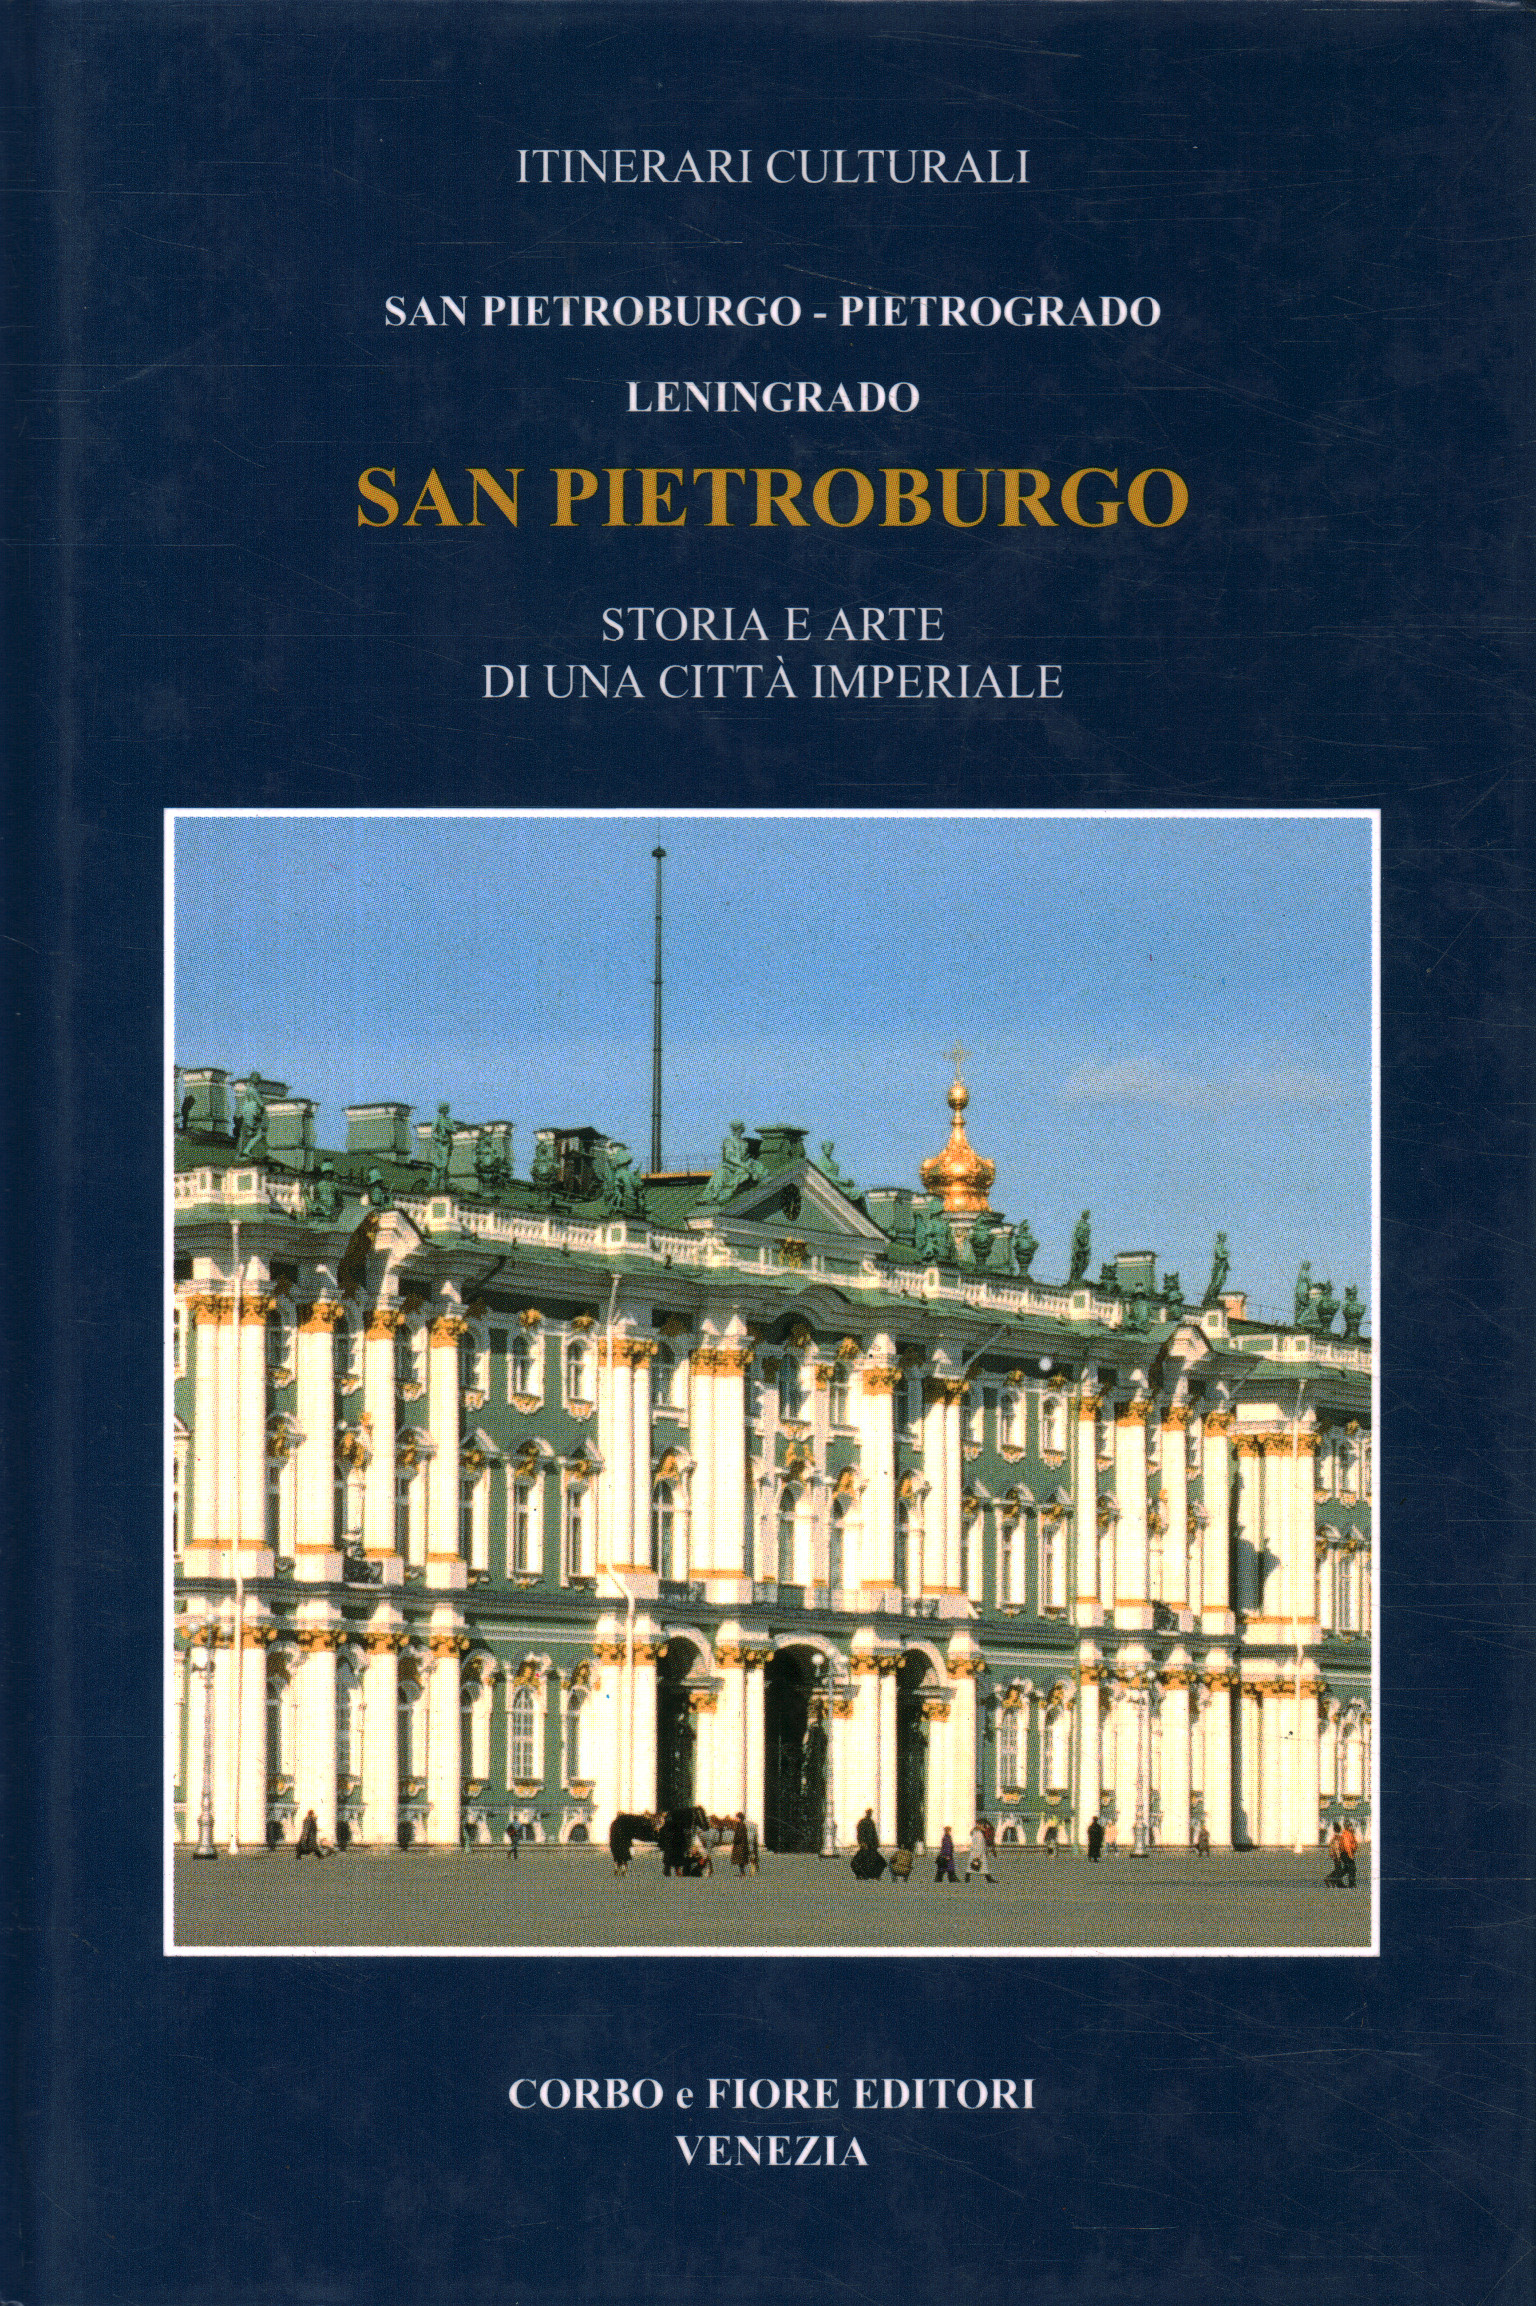 San Pietroburgo Pietrogrado, Leningrado,San Pietroburgo Pietrogrado, Leningrado